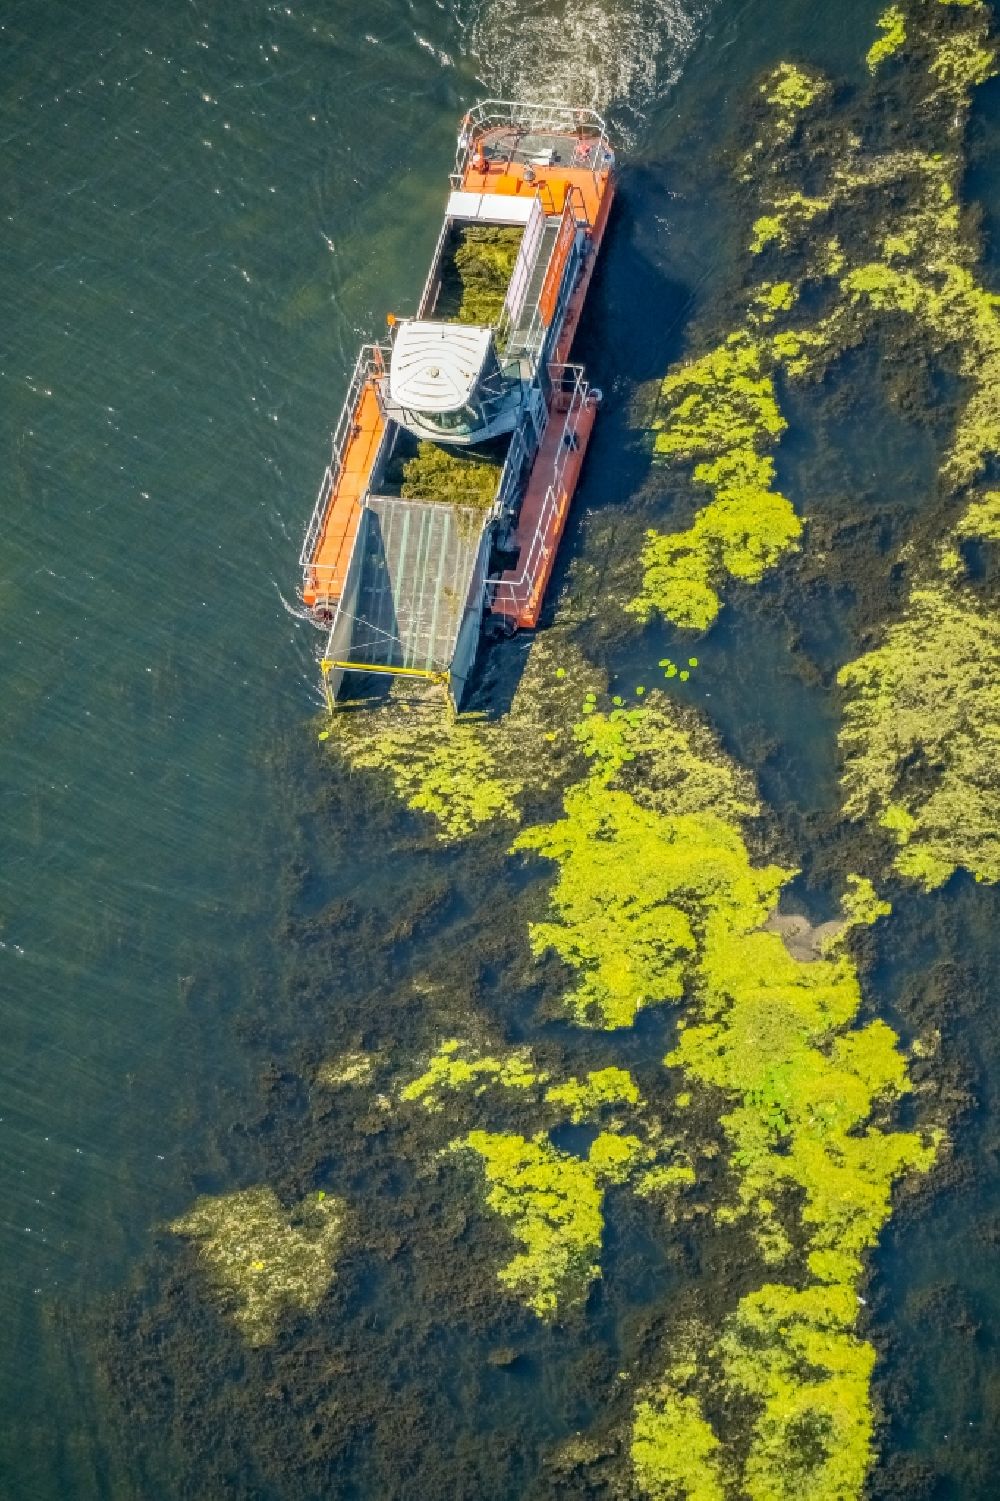 Herbede aus der Vogelperspektive: Bergung von Algen auf der Wasseroberfläche des Kemnader See in Herbede im Bundesland Nordrhein-Westfalen, Deutschland